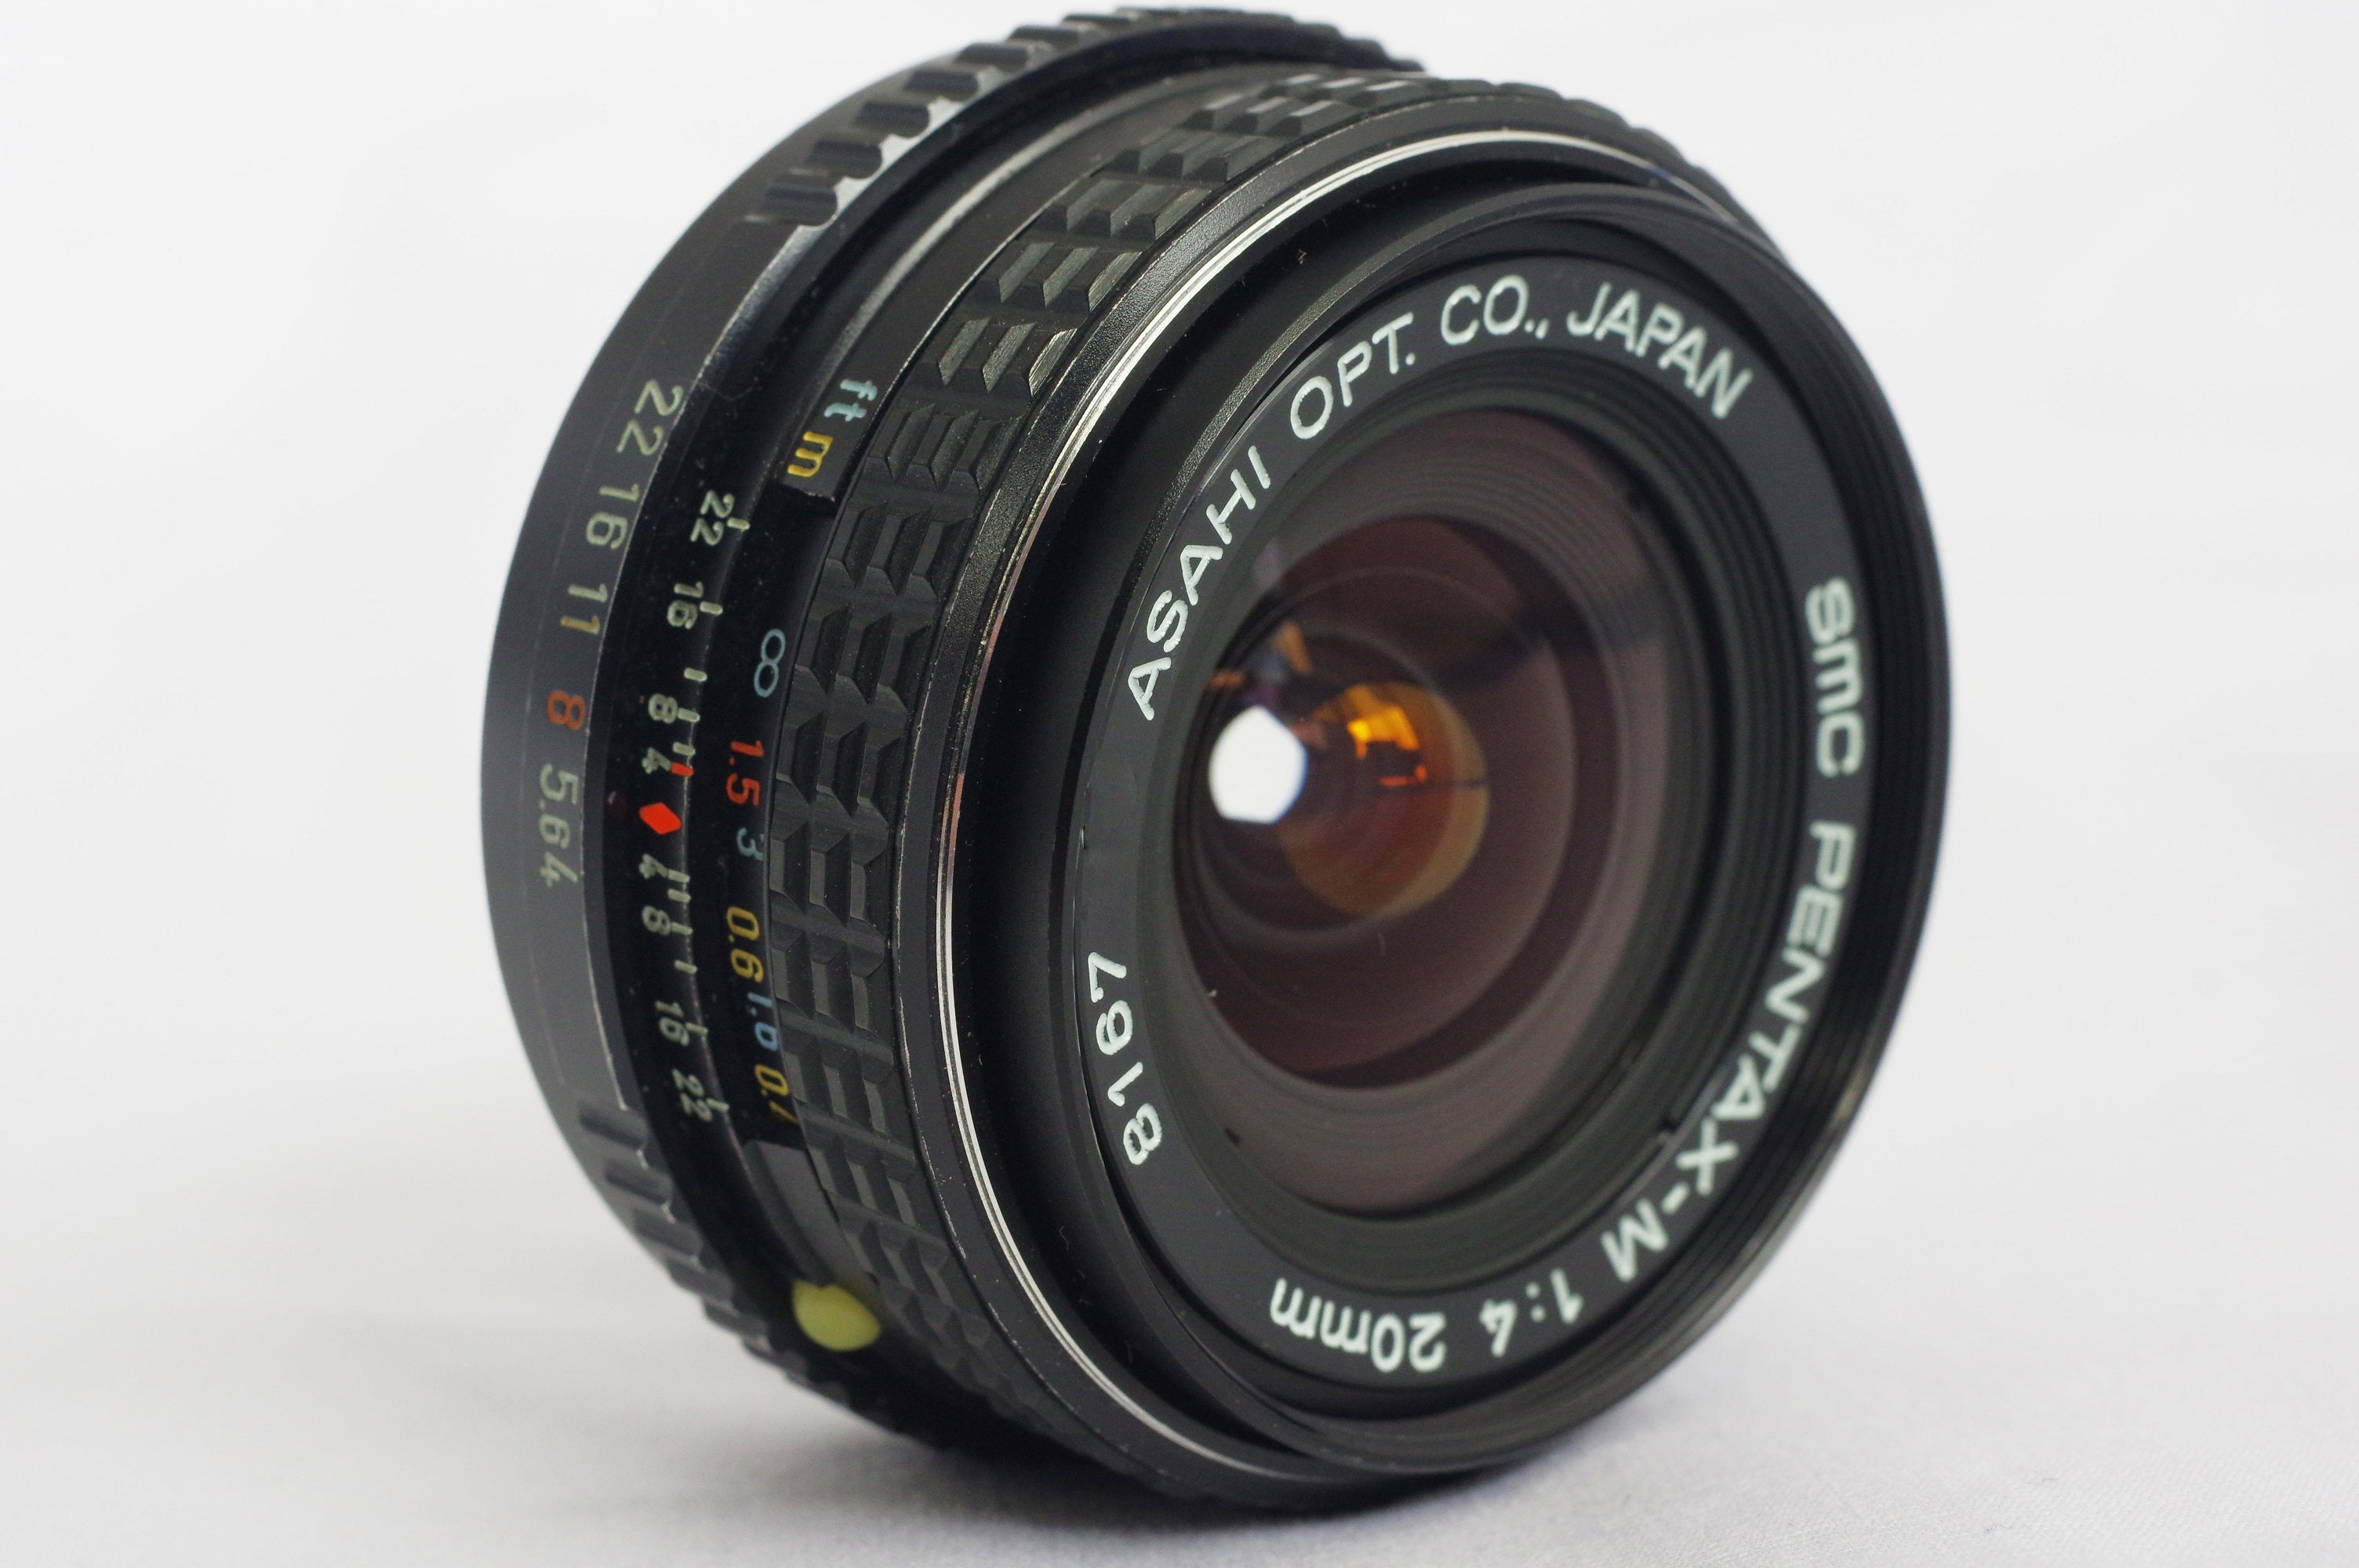 smc PENTAX-M 20mm F4 - パンケーキの小型超広角レンズ | はなはなの ...